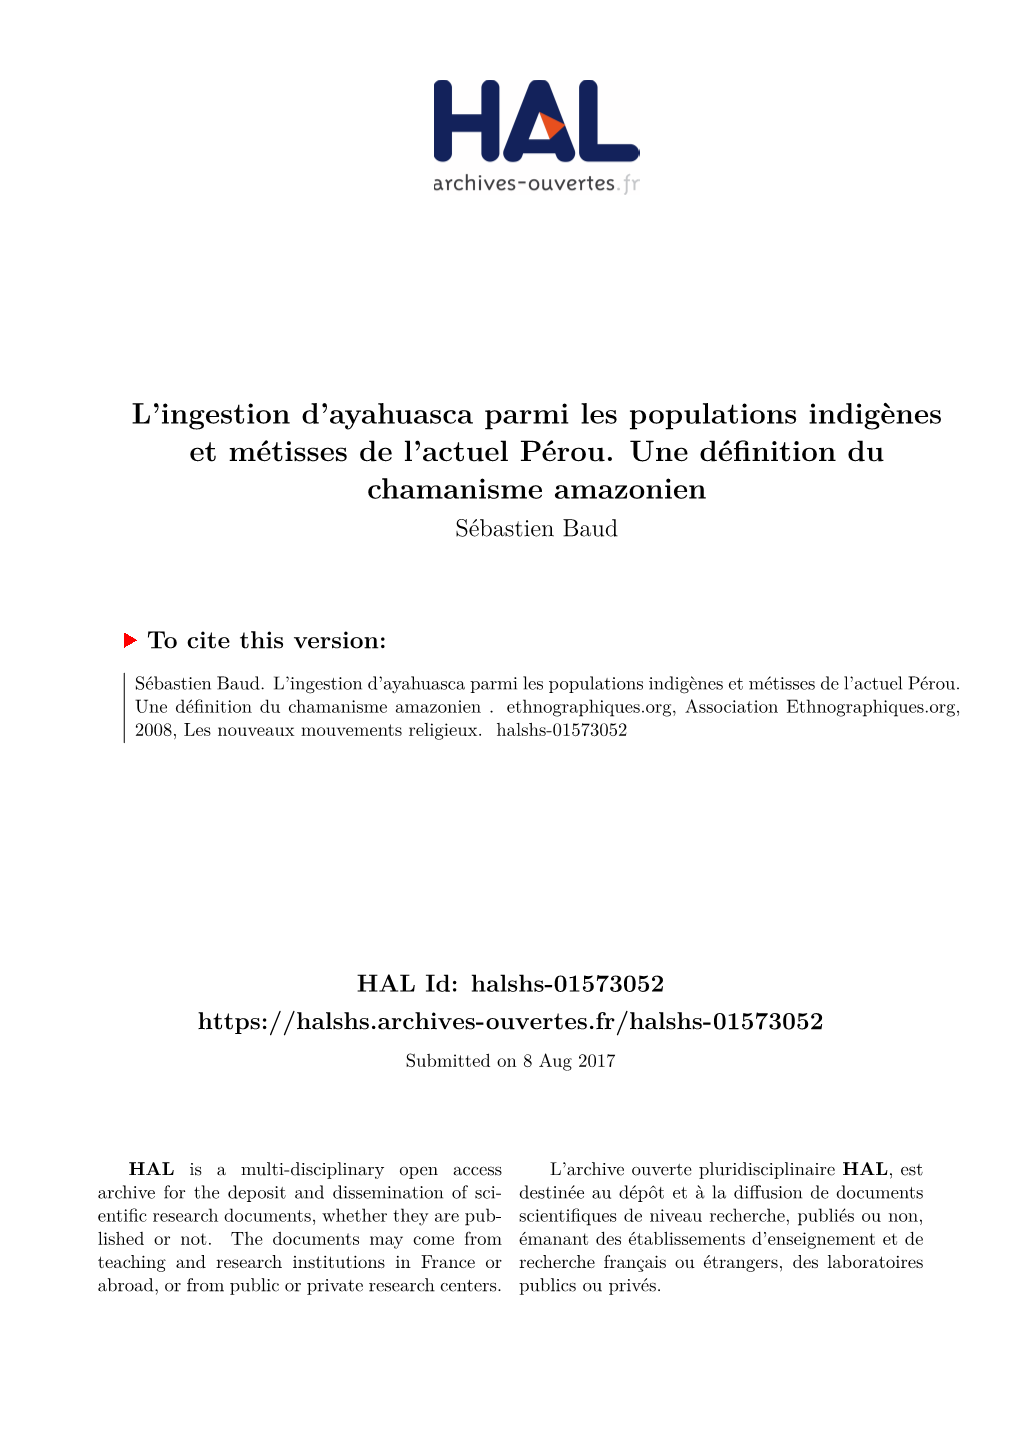 L'ingestion D'ayahuasca Parmi Les Populations Indigènes Et Métisses